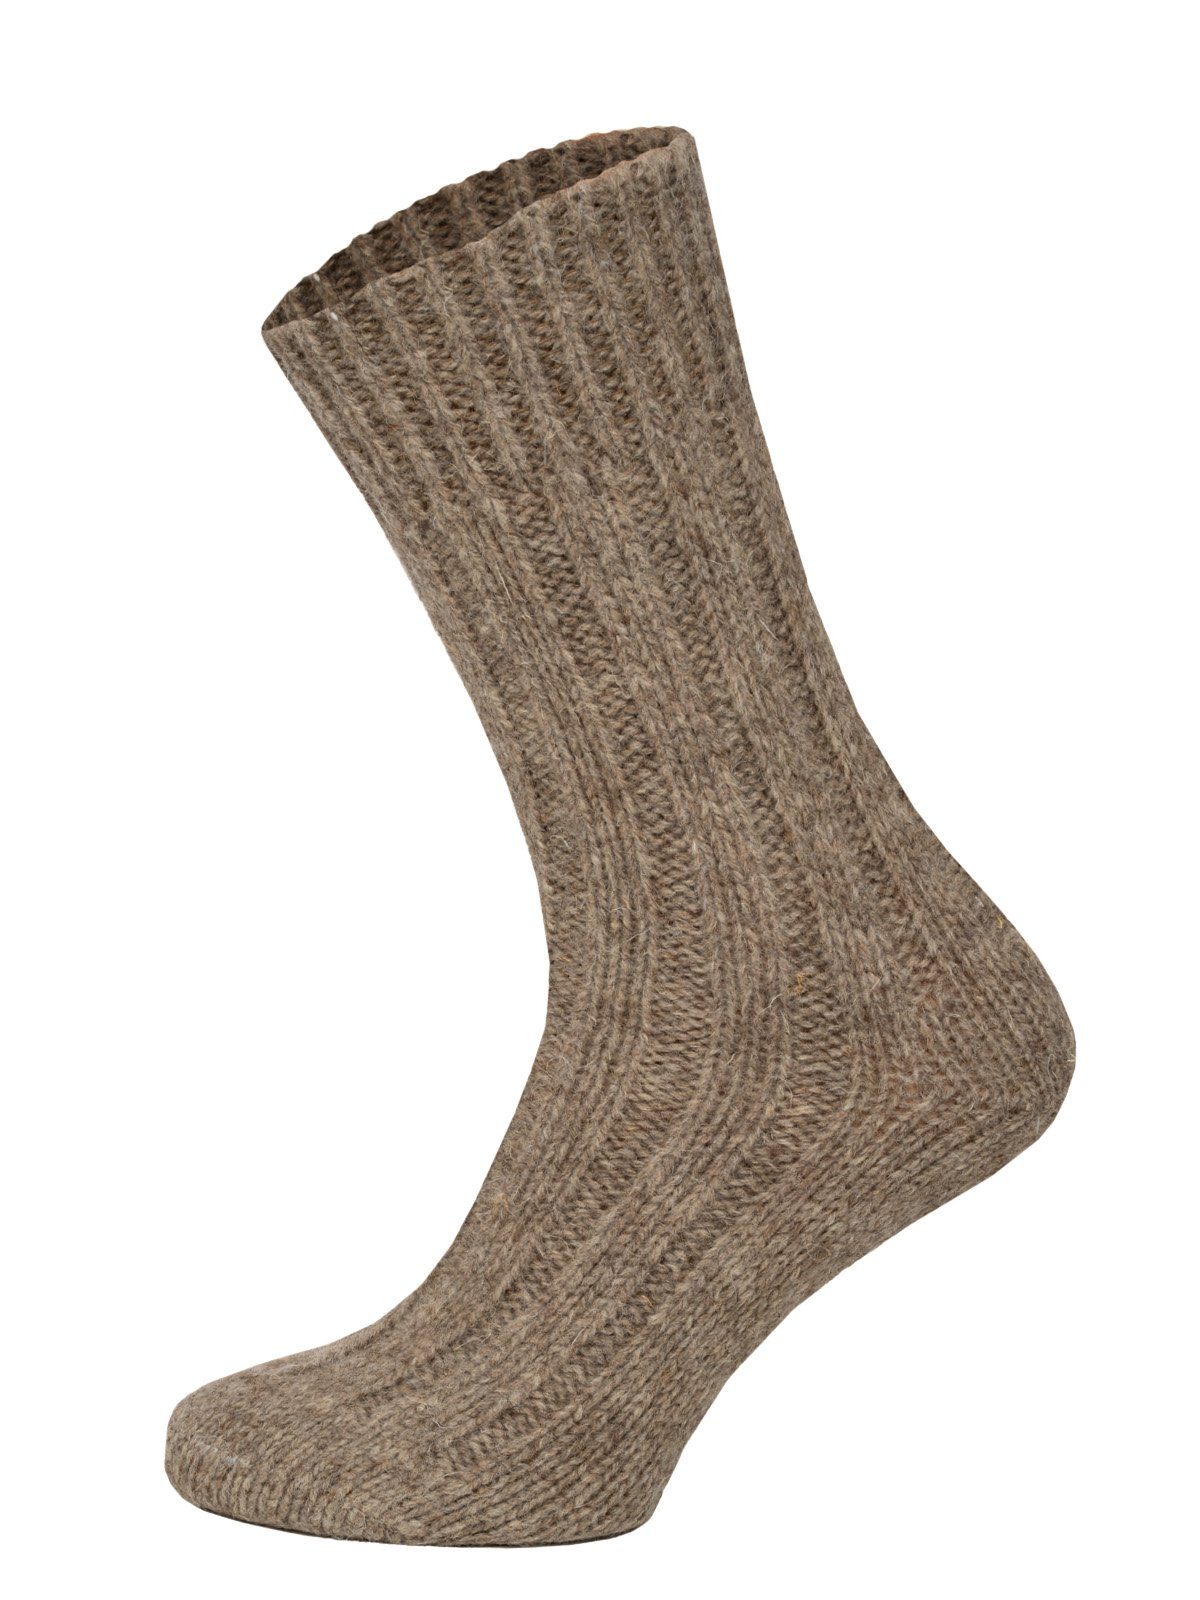 HomeOfSocks Socken Wollsocken aus 100% Wolle (Schurwolle) 2er Pack Dicke und warme Wollsocken mit 100% Wollanteil Taupe